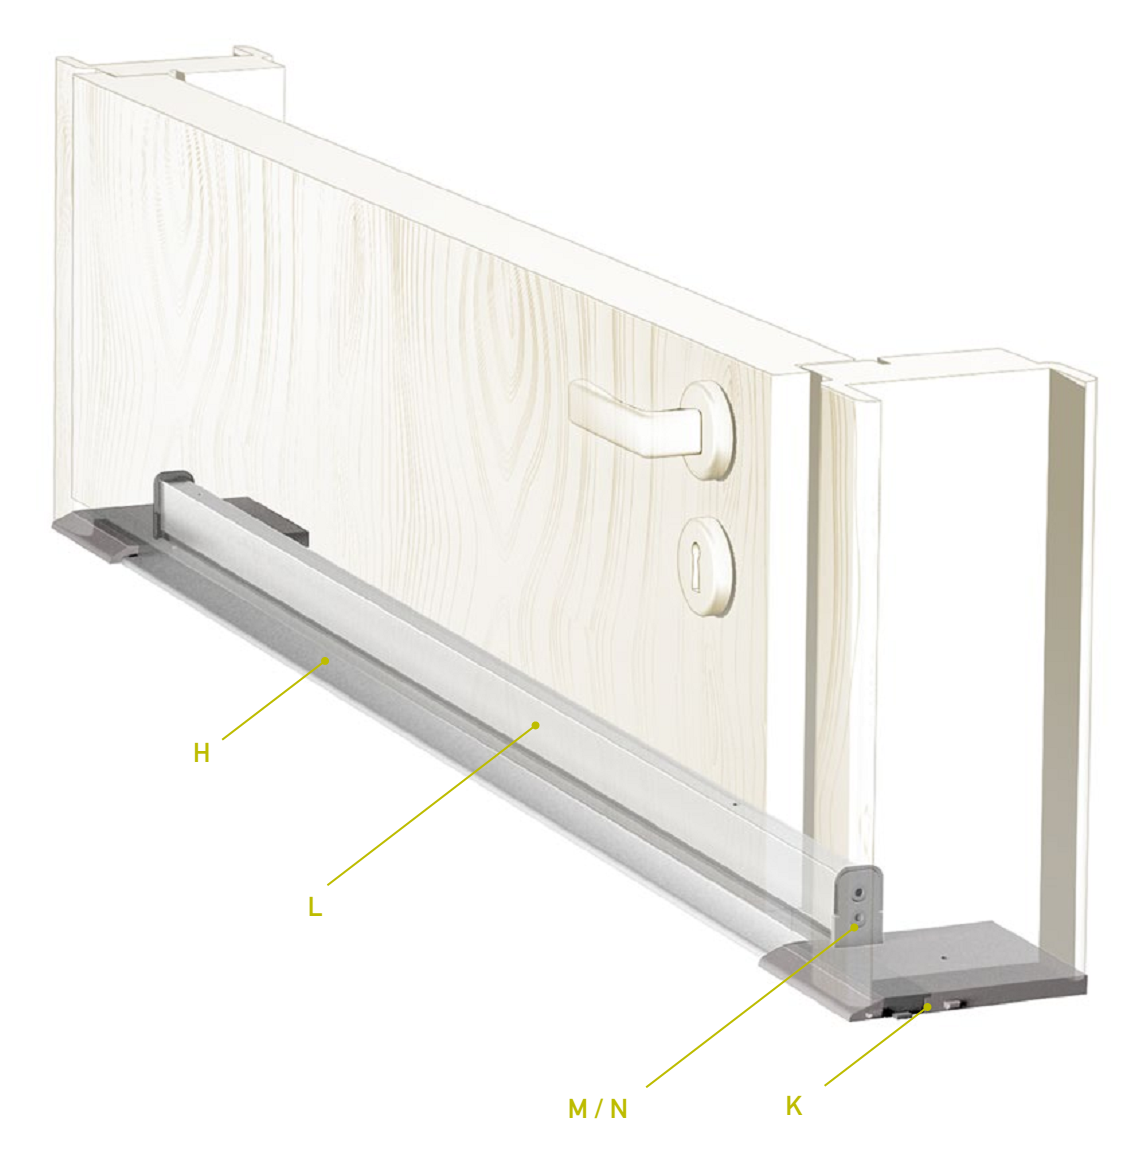 CCE -  Soglia TERMO ULISSE WOOD per porta d'ingresso in legno con taglio termico - col. ARGENTO - l. 71 - h. 9 - l. max 3500